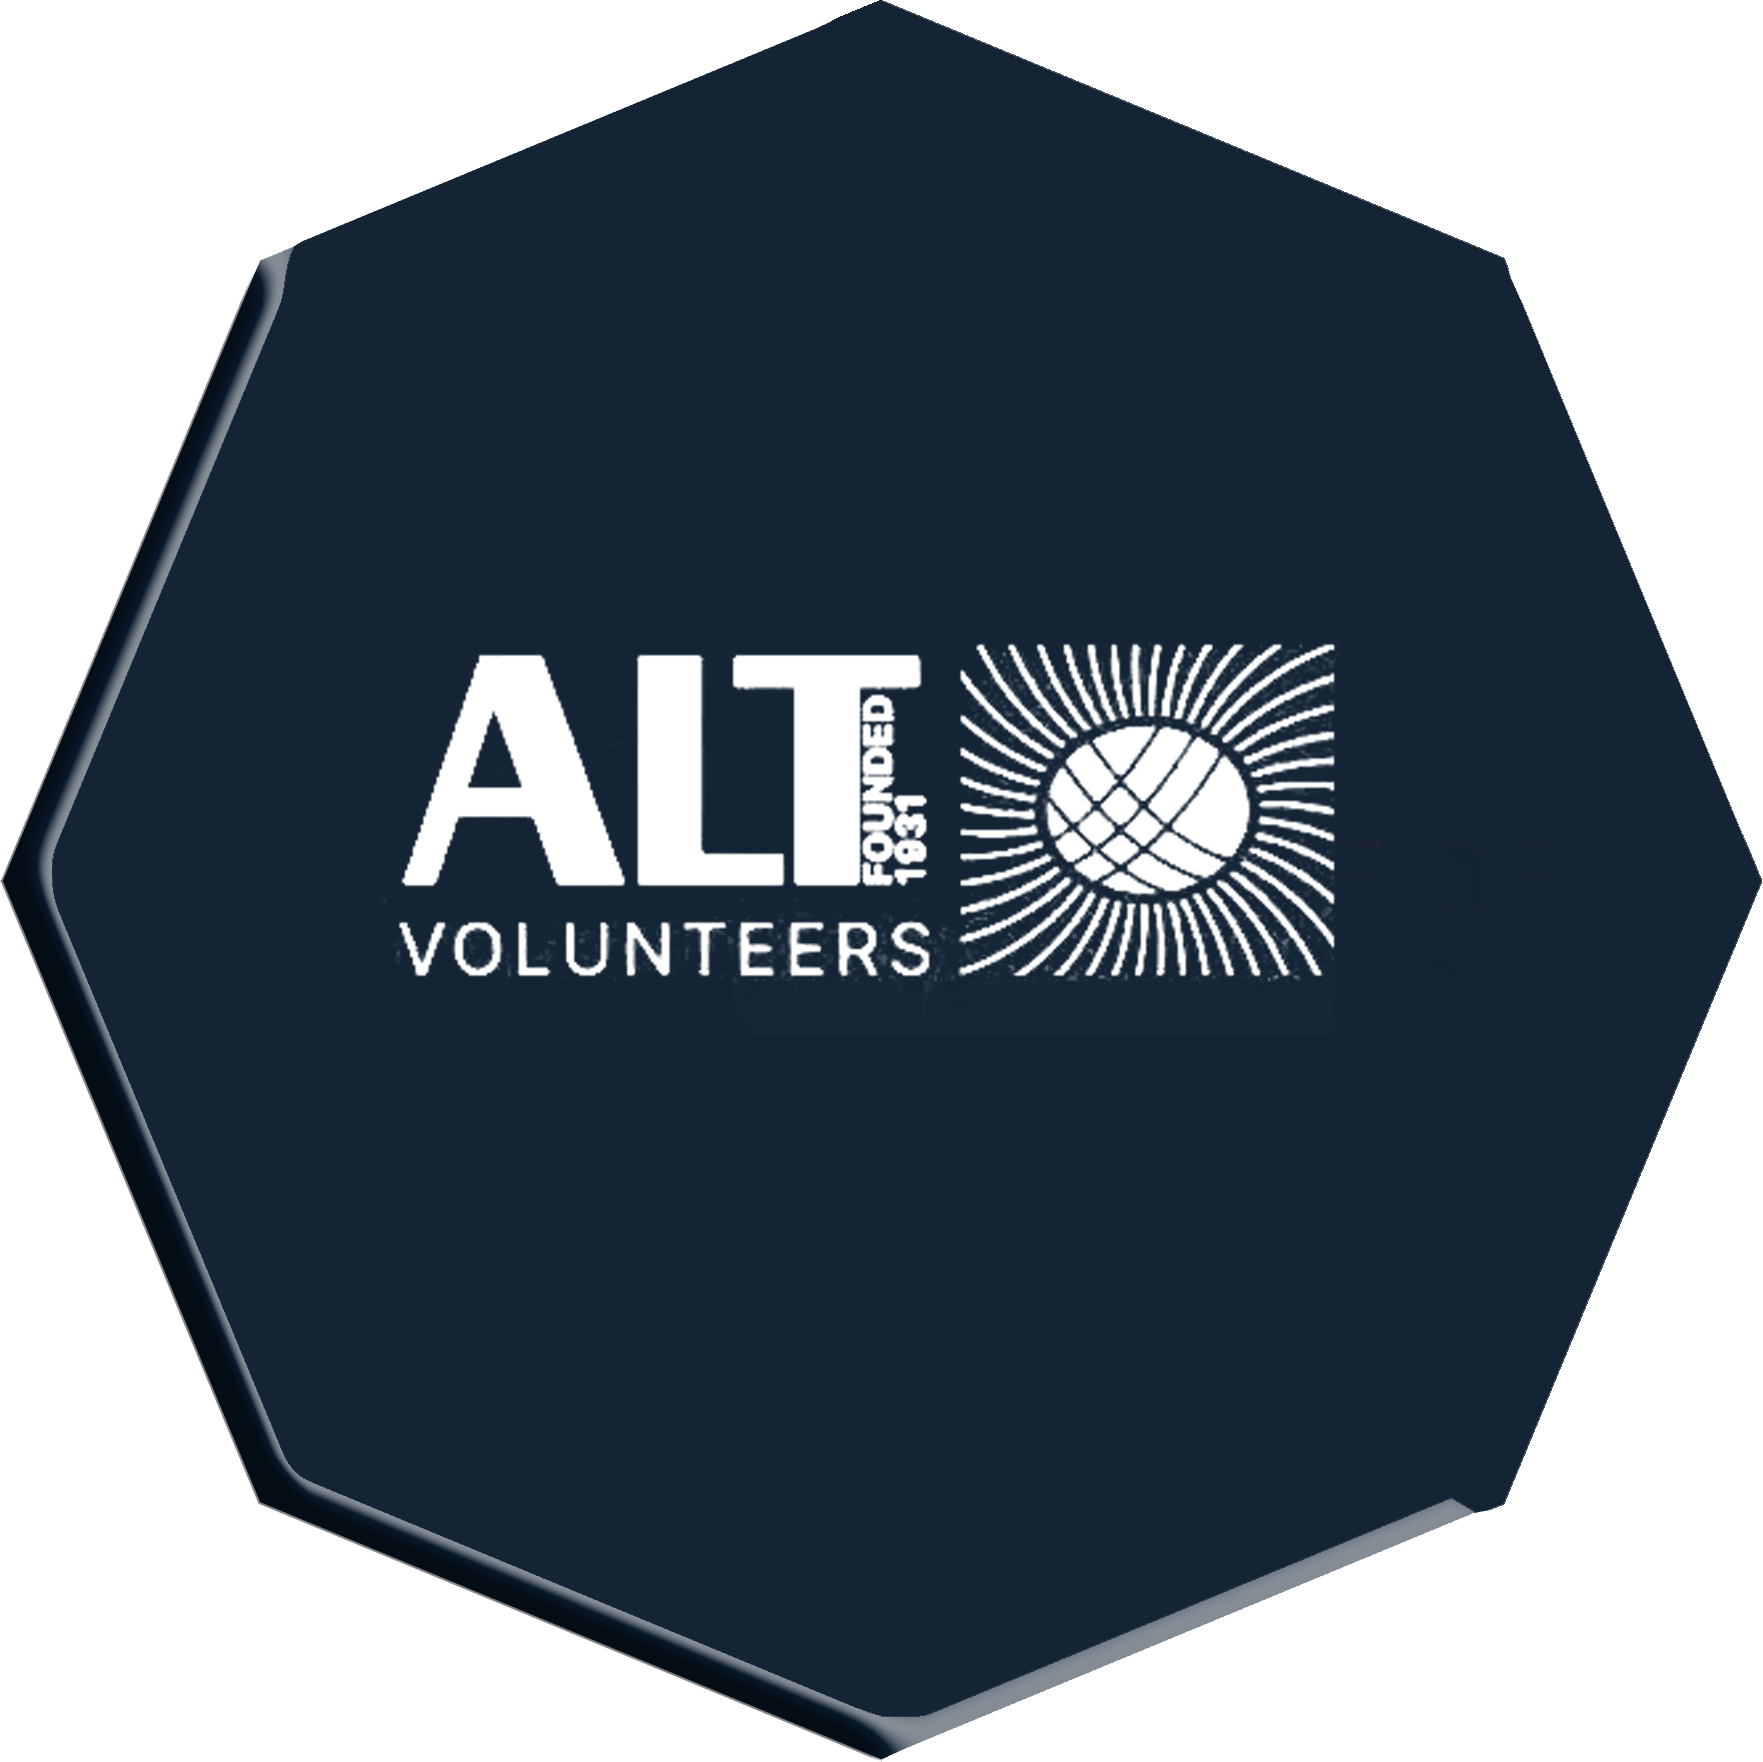 ALT volunteers